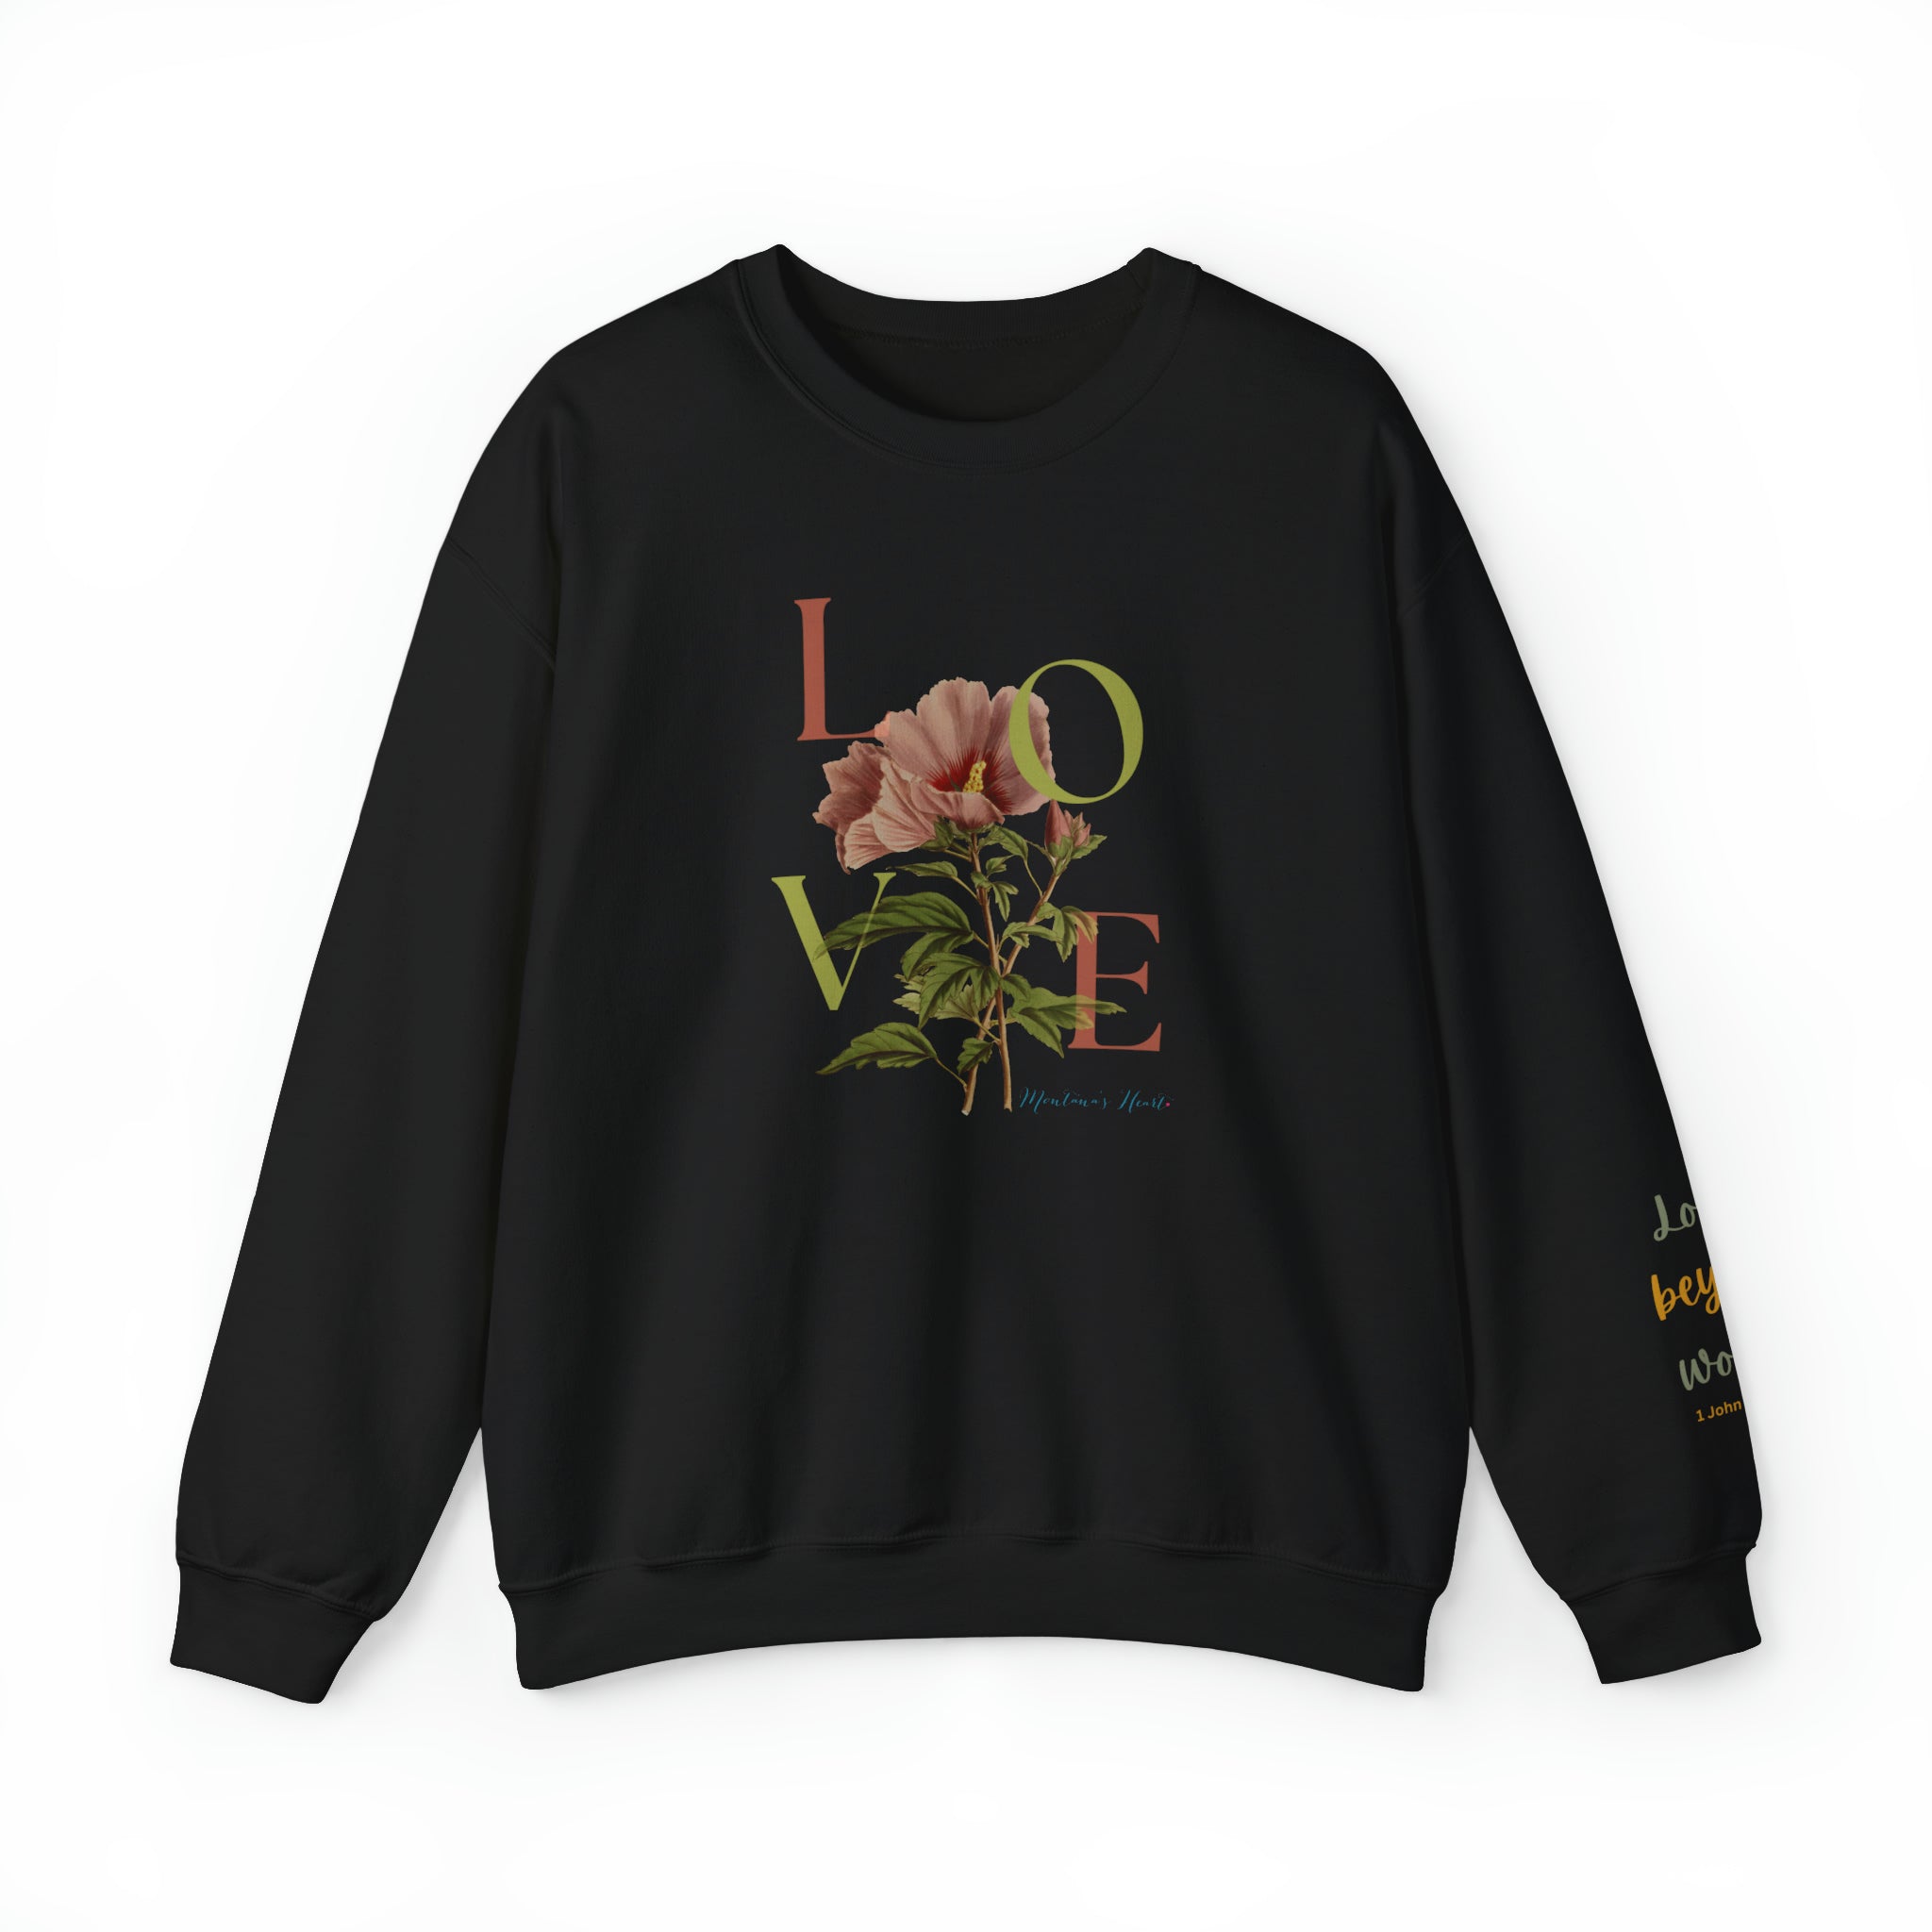 Love Beyond Words, Ladies sweatshirt